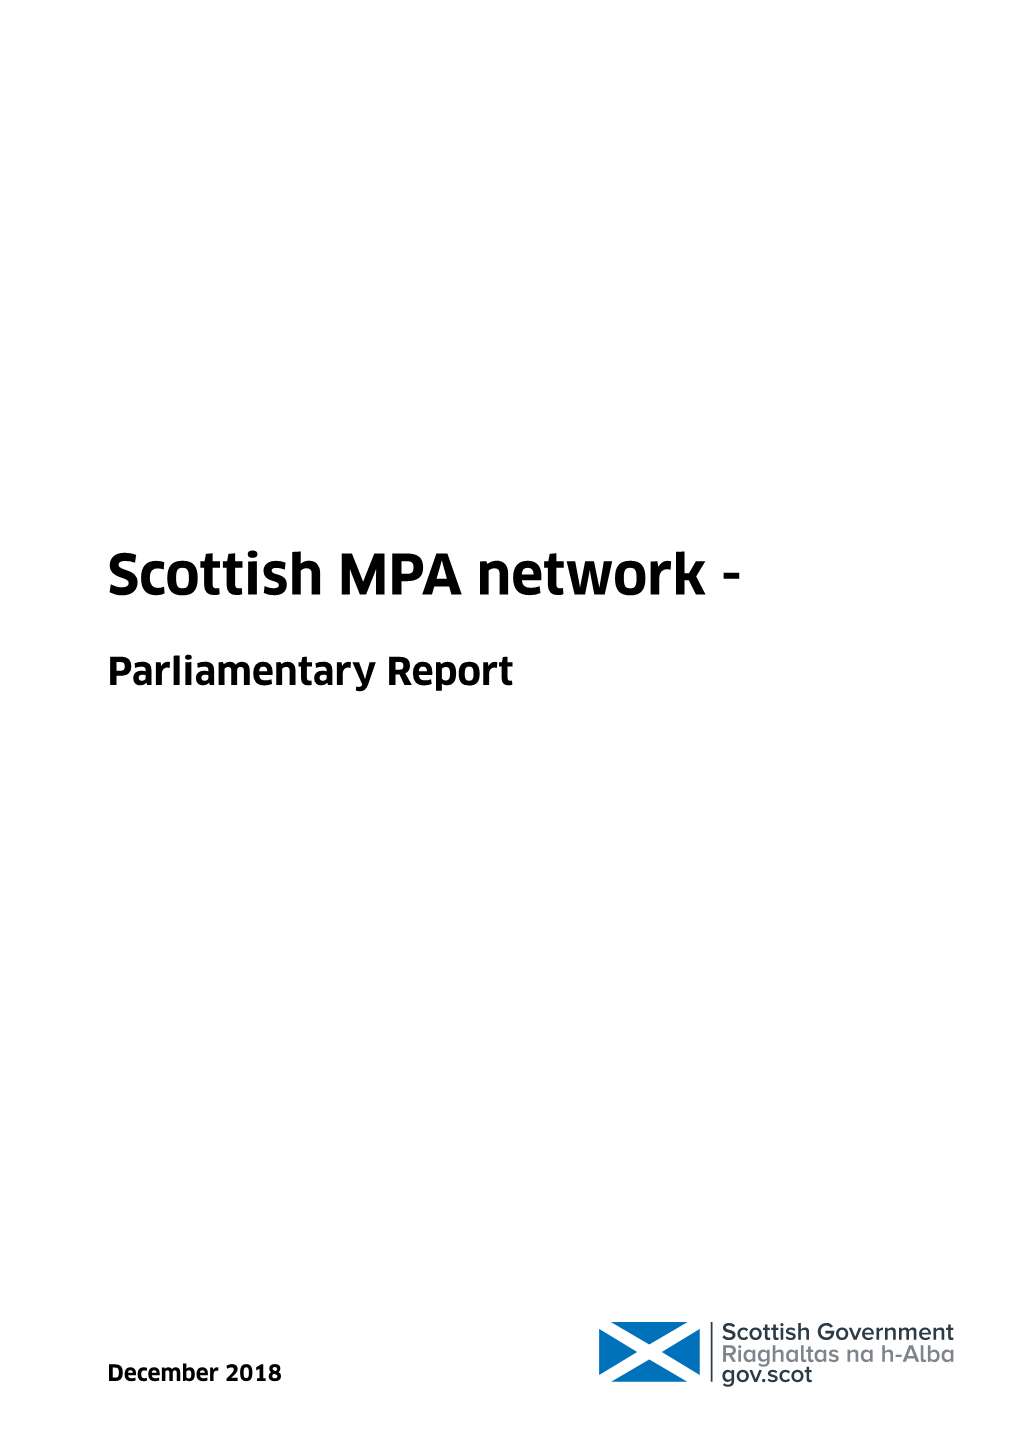 Scottish MPA Network